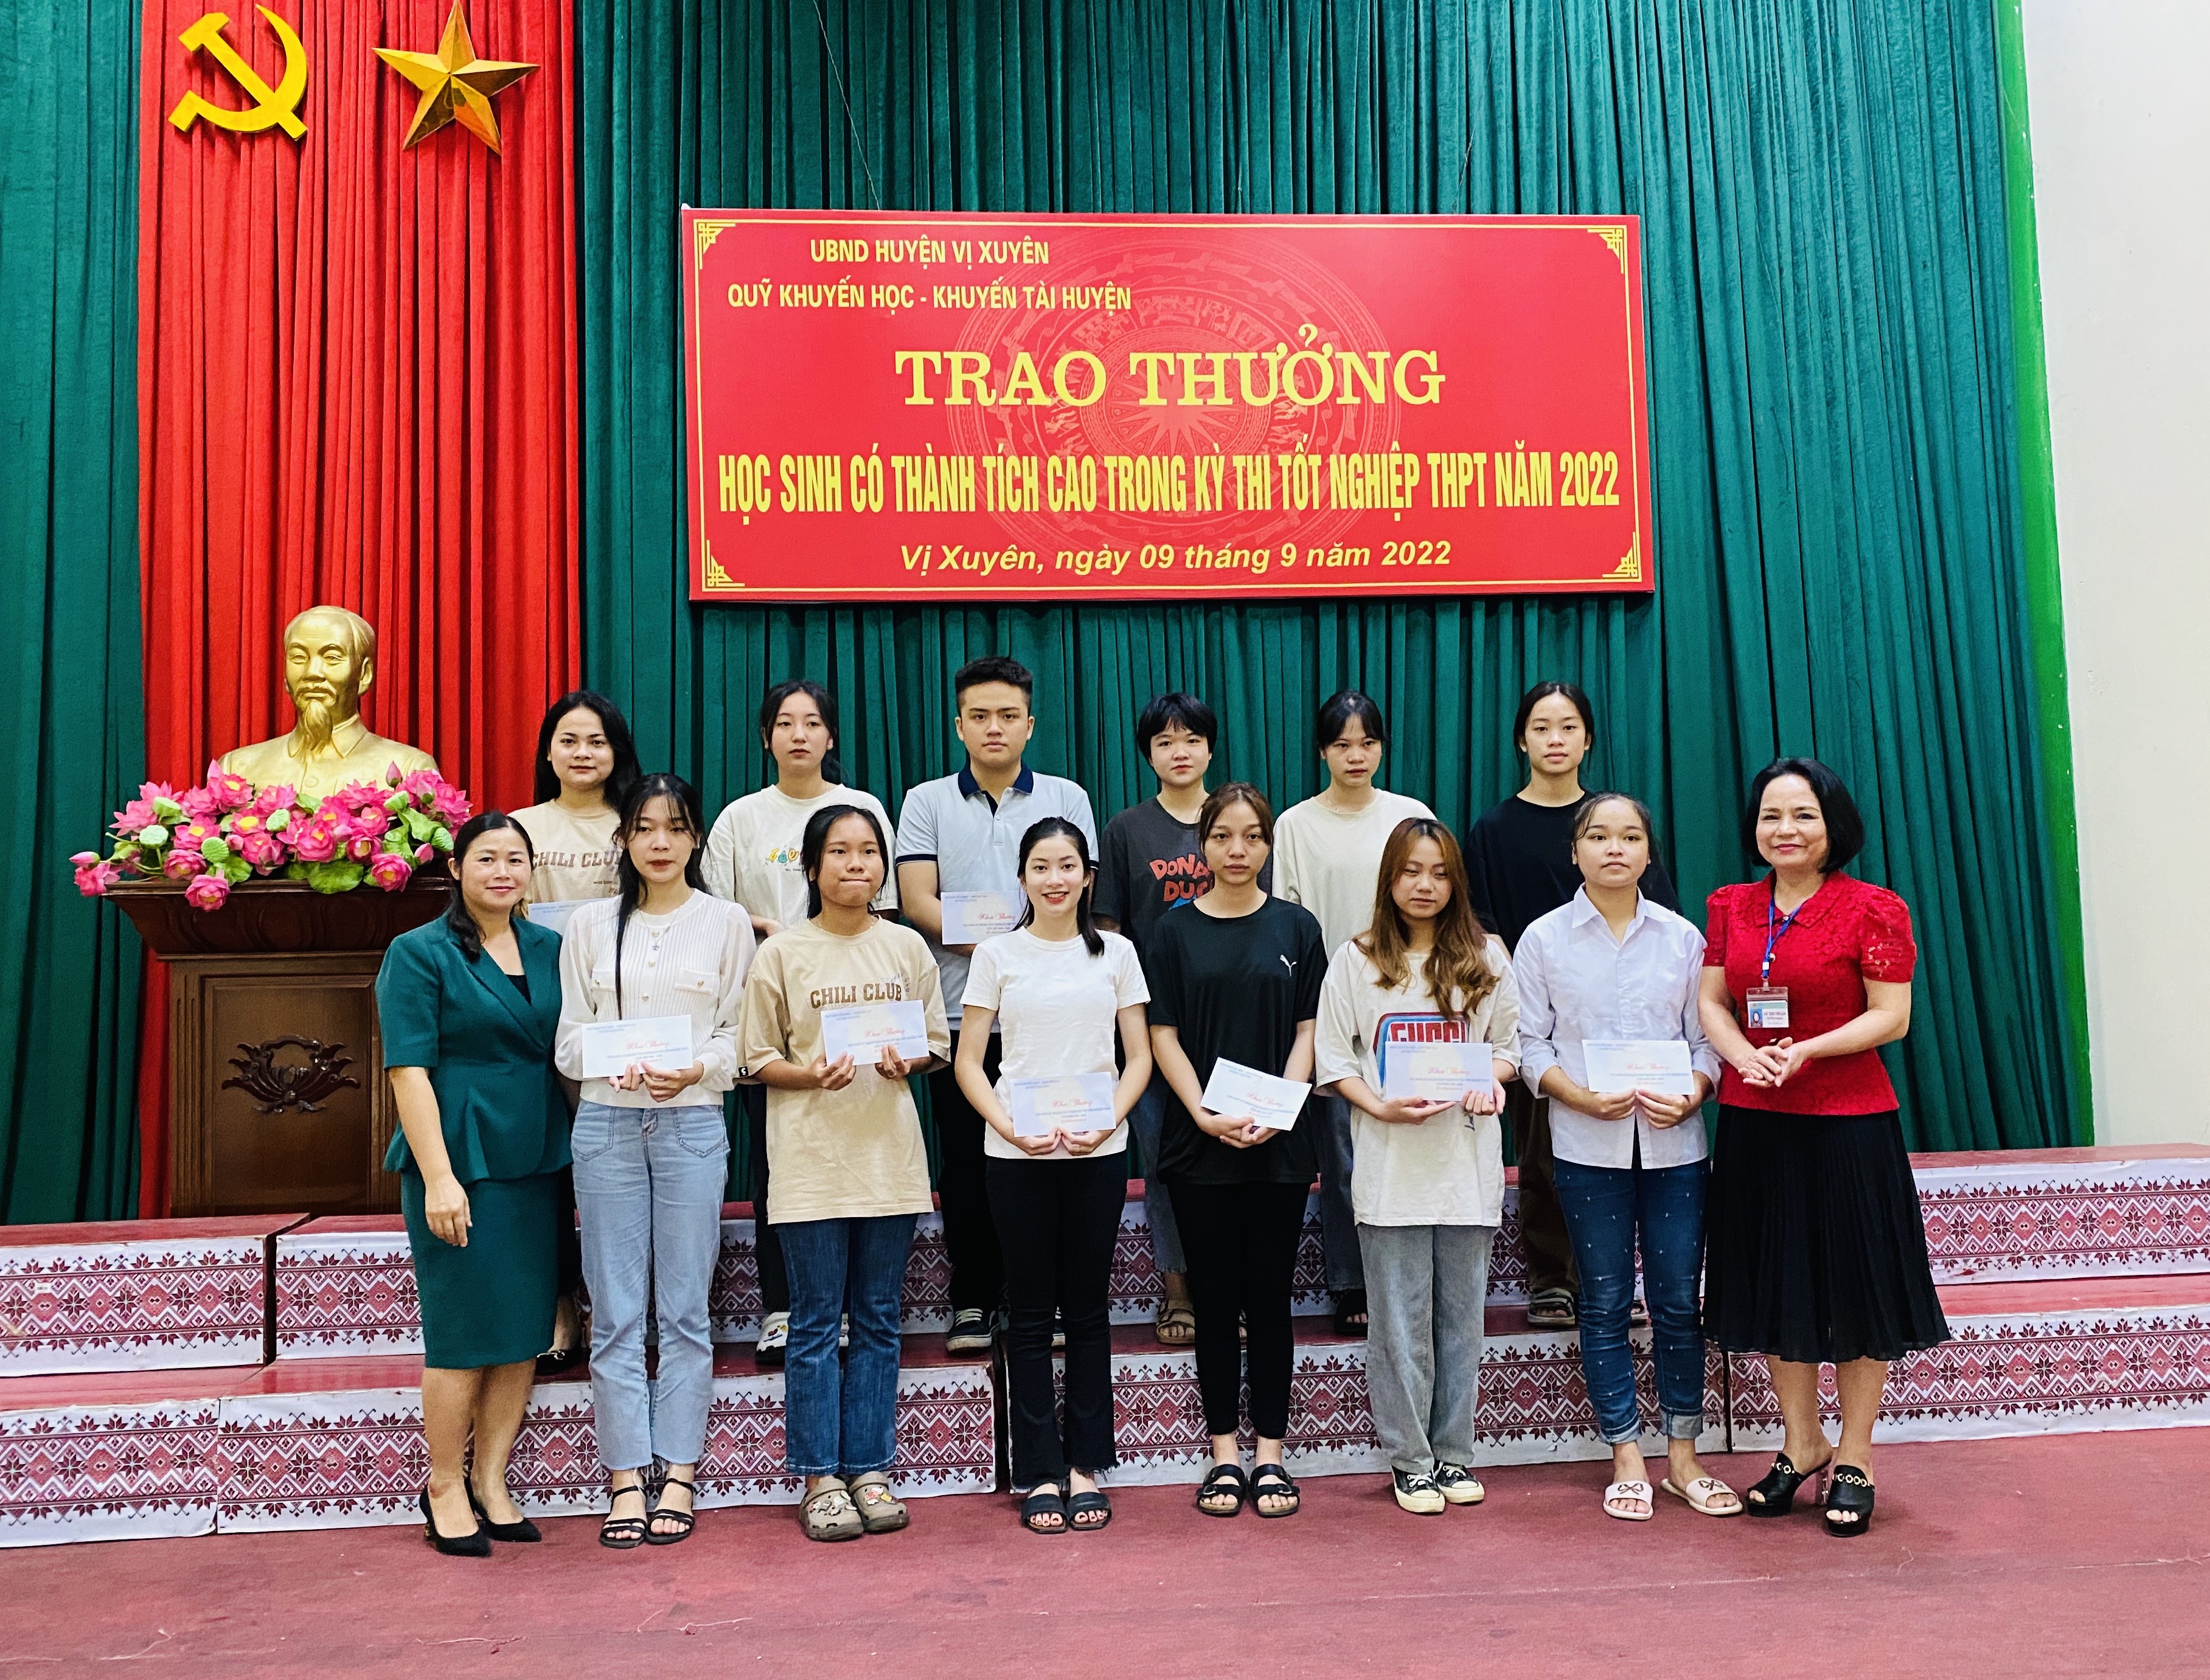 Vị Xuyên trao thưởng học sinh có thành tích cao trong Kỳ thi tốt nghiệp THPT 2022